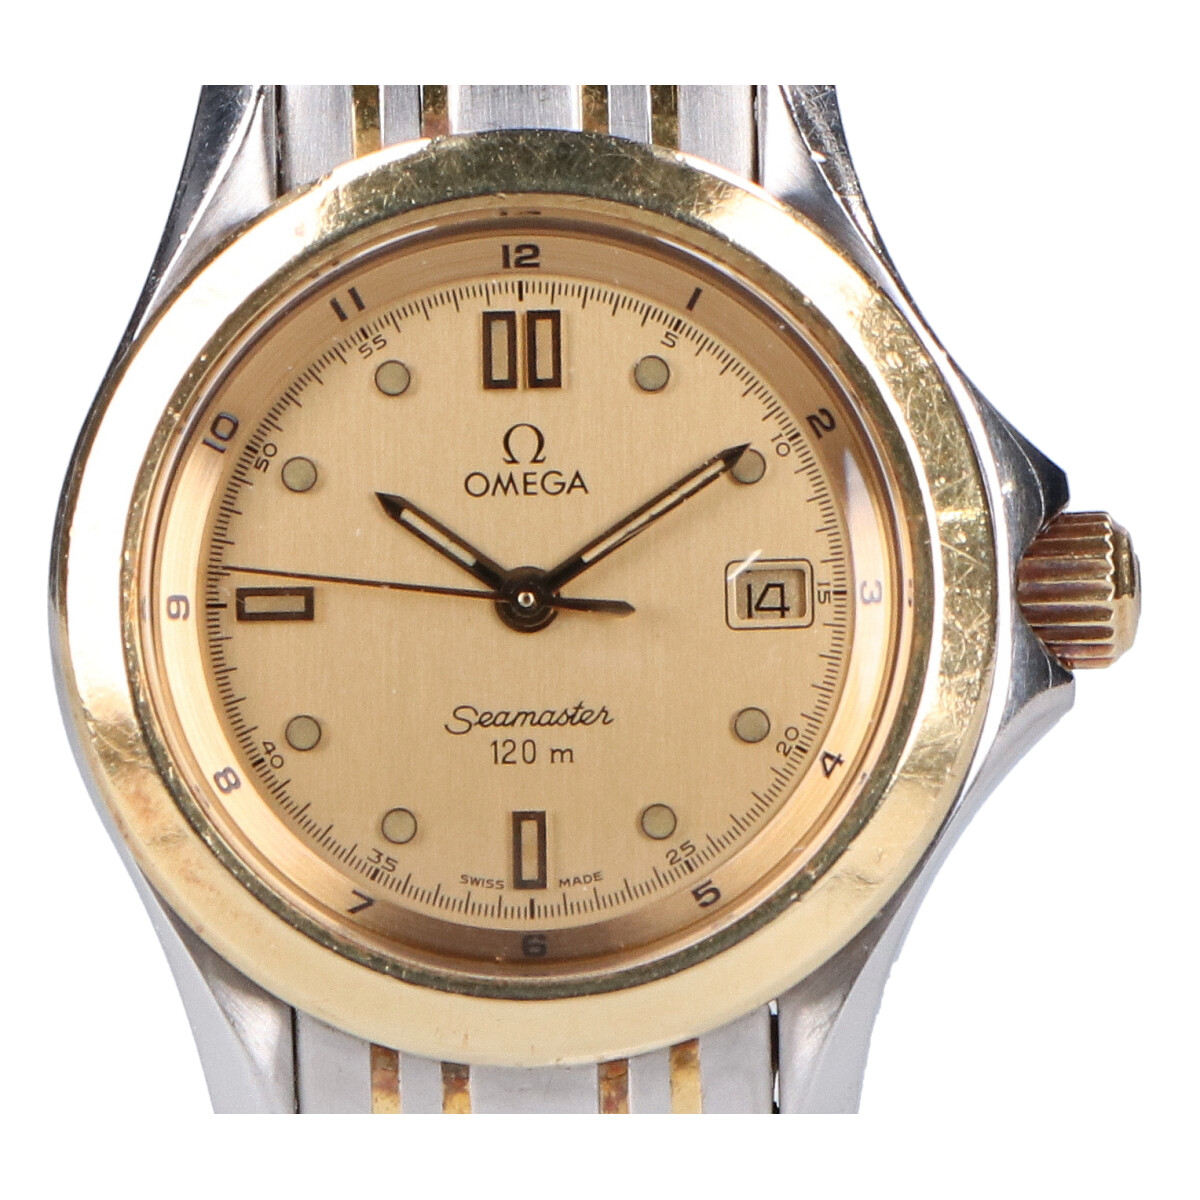 オメガの2371.10 シーマスター120m デイトクォーツ腕時計の買取実績です。